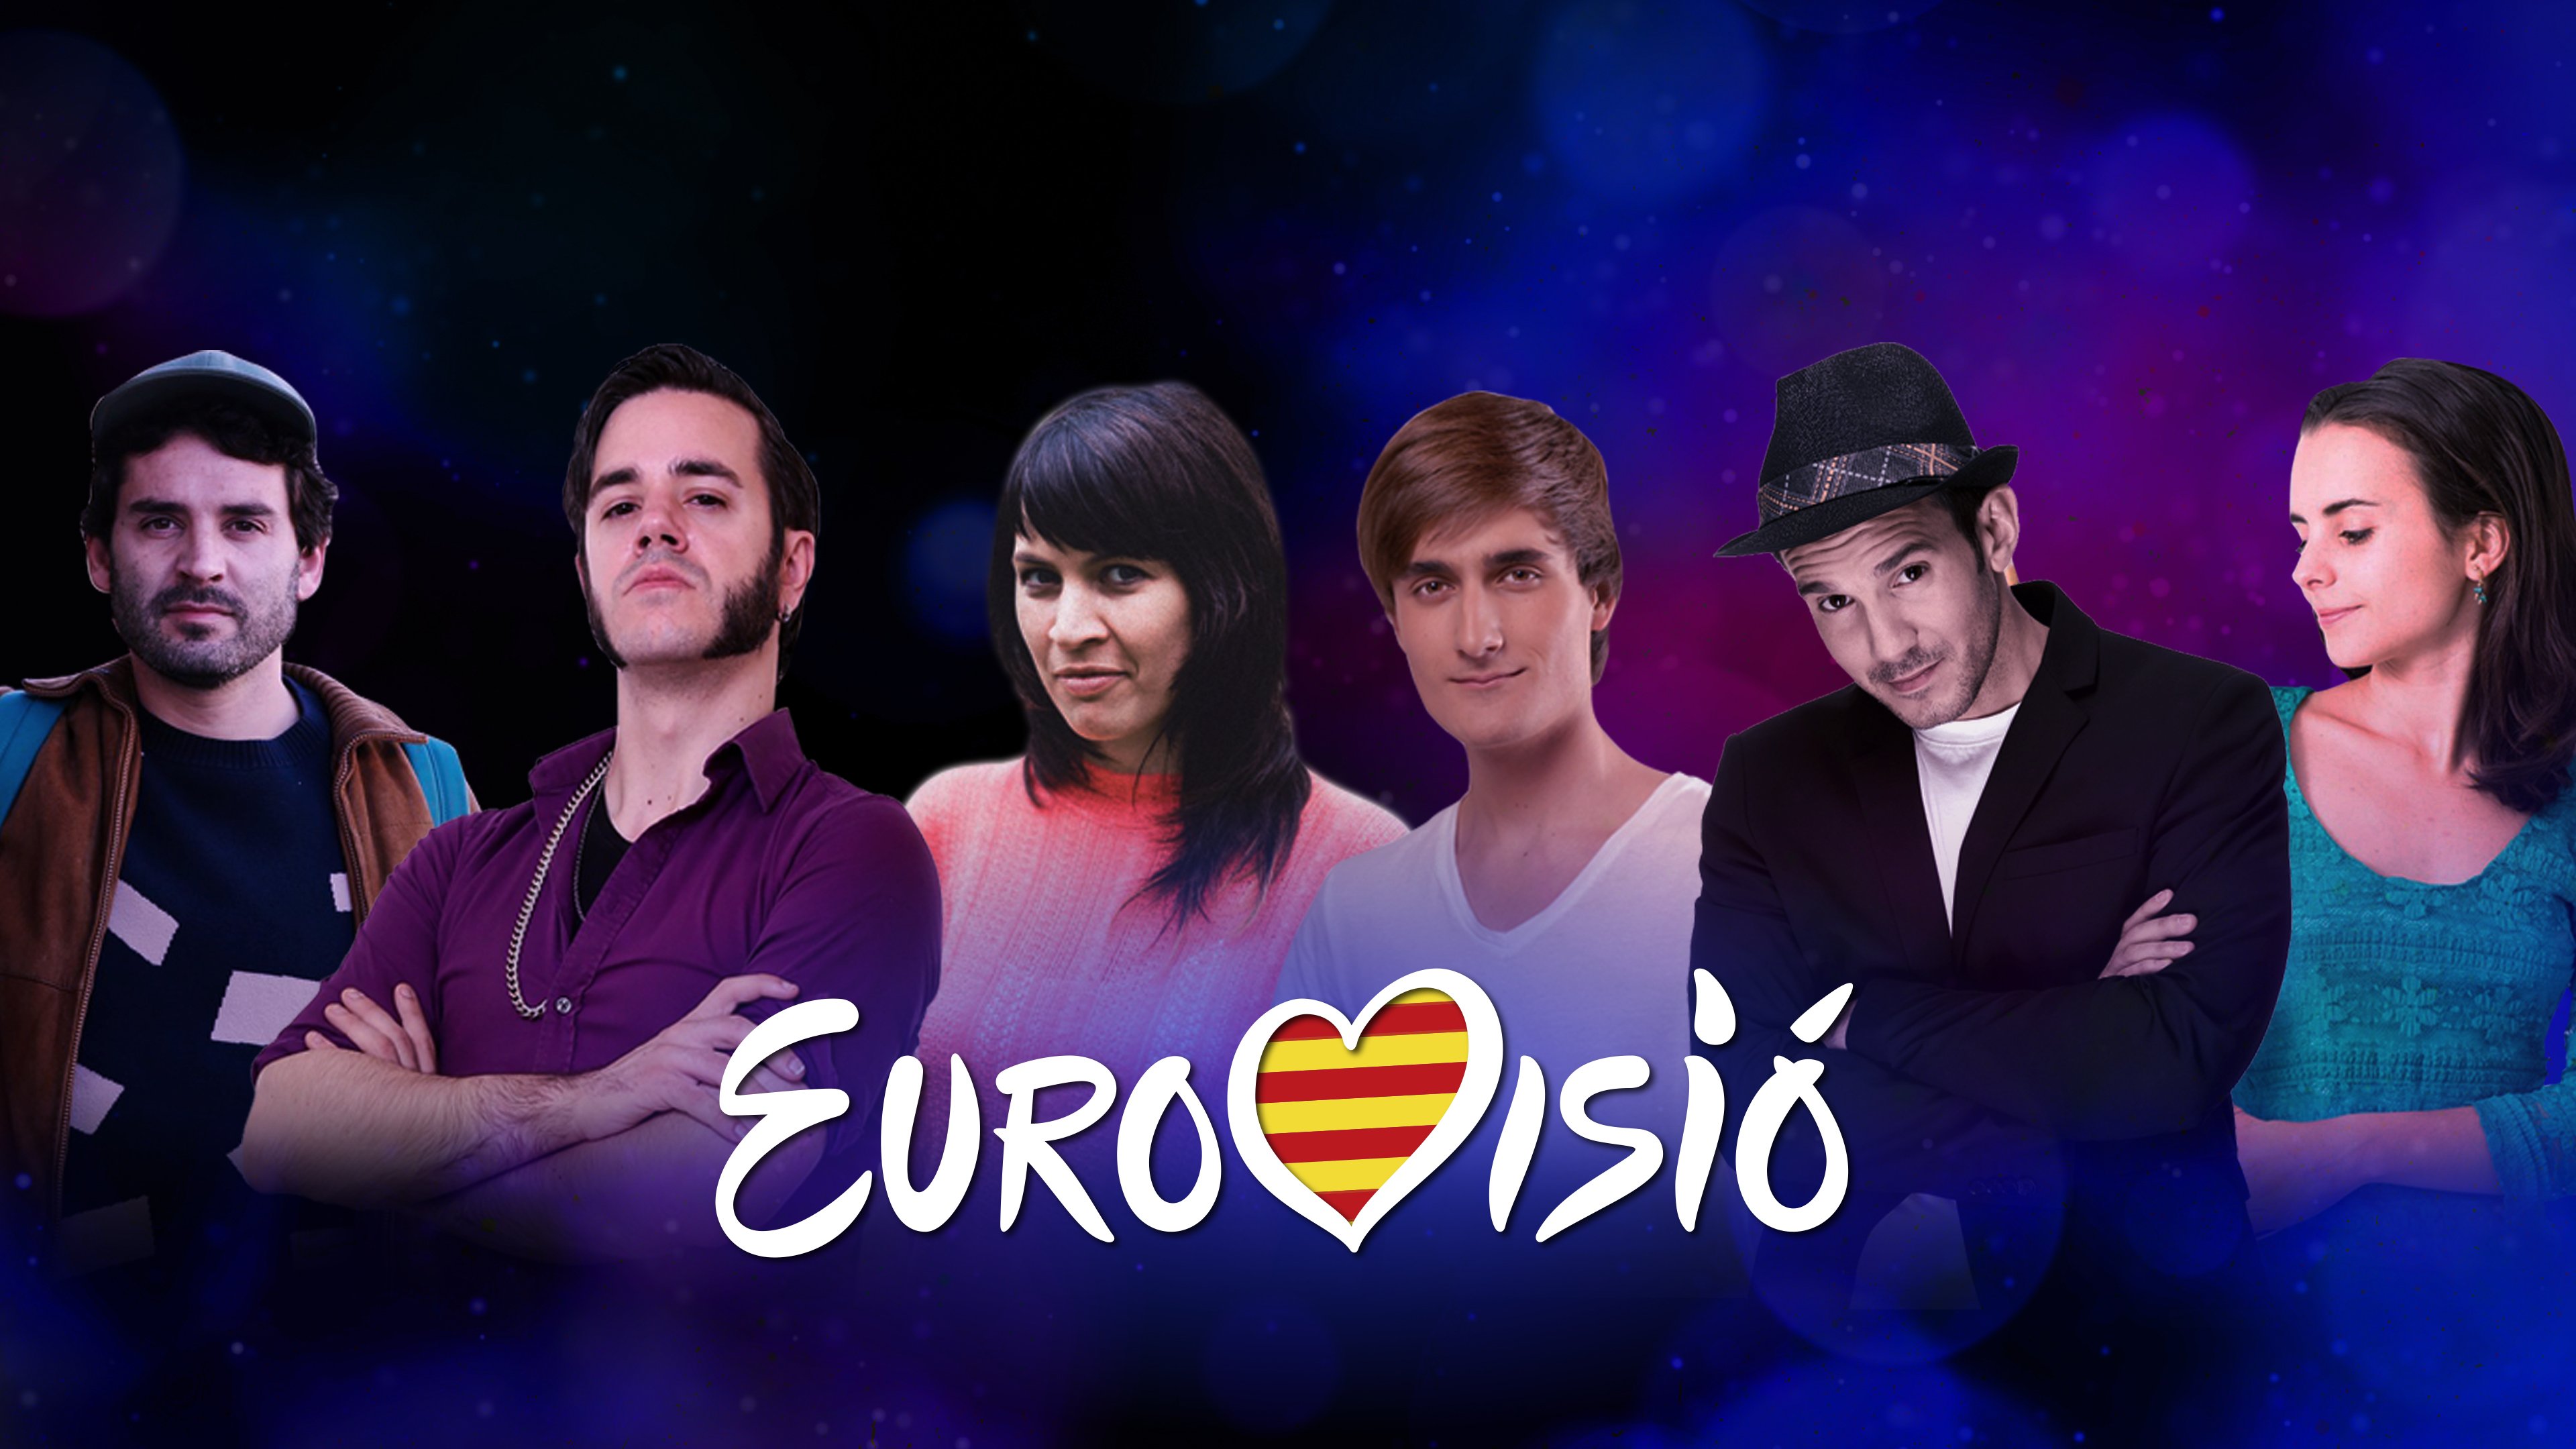 La UER diu no a TV3 mentre sis artistes catalans rumien representar-la a Eurovisió